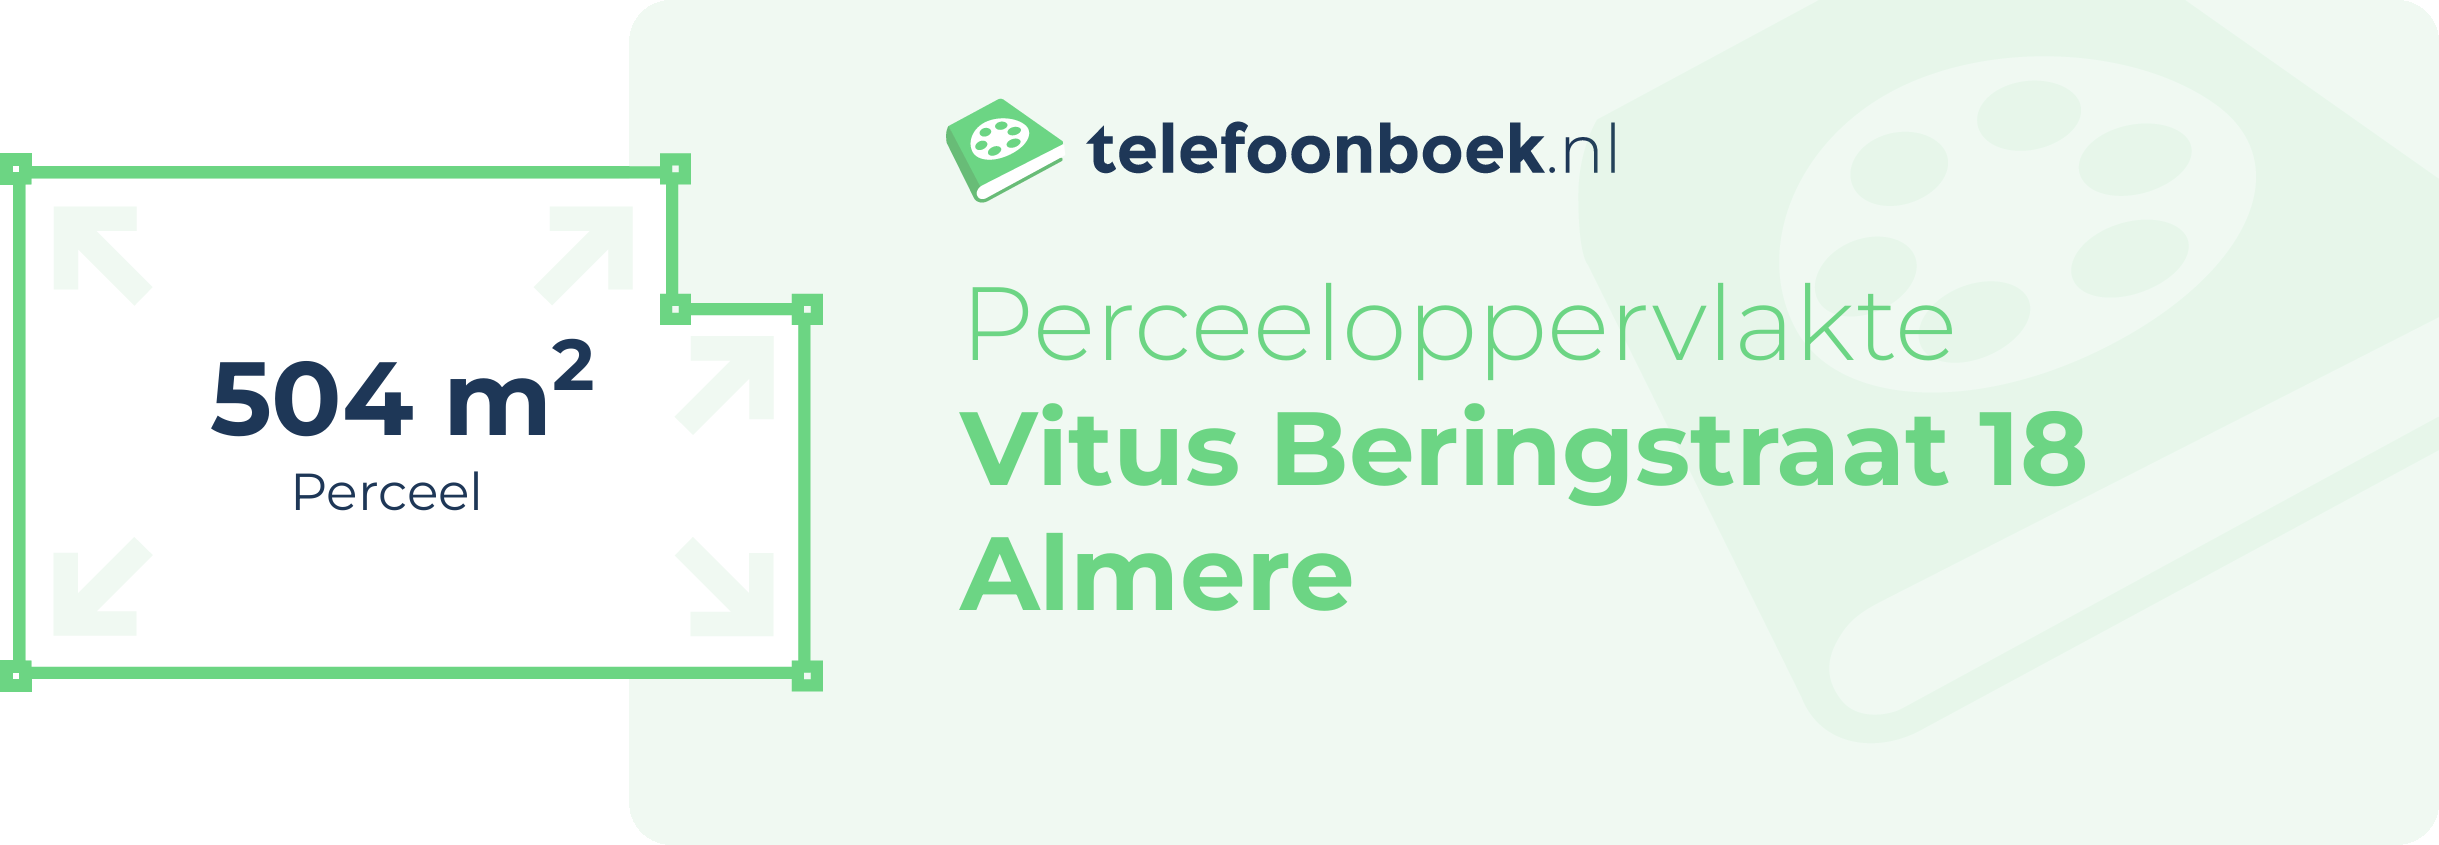 Perceeloppervlakte Vitus Beringstraat 18 Almere